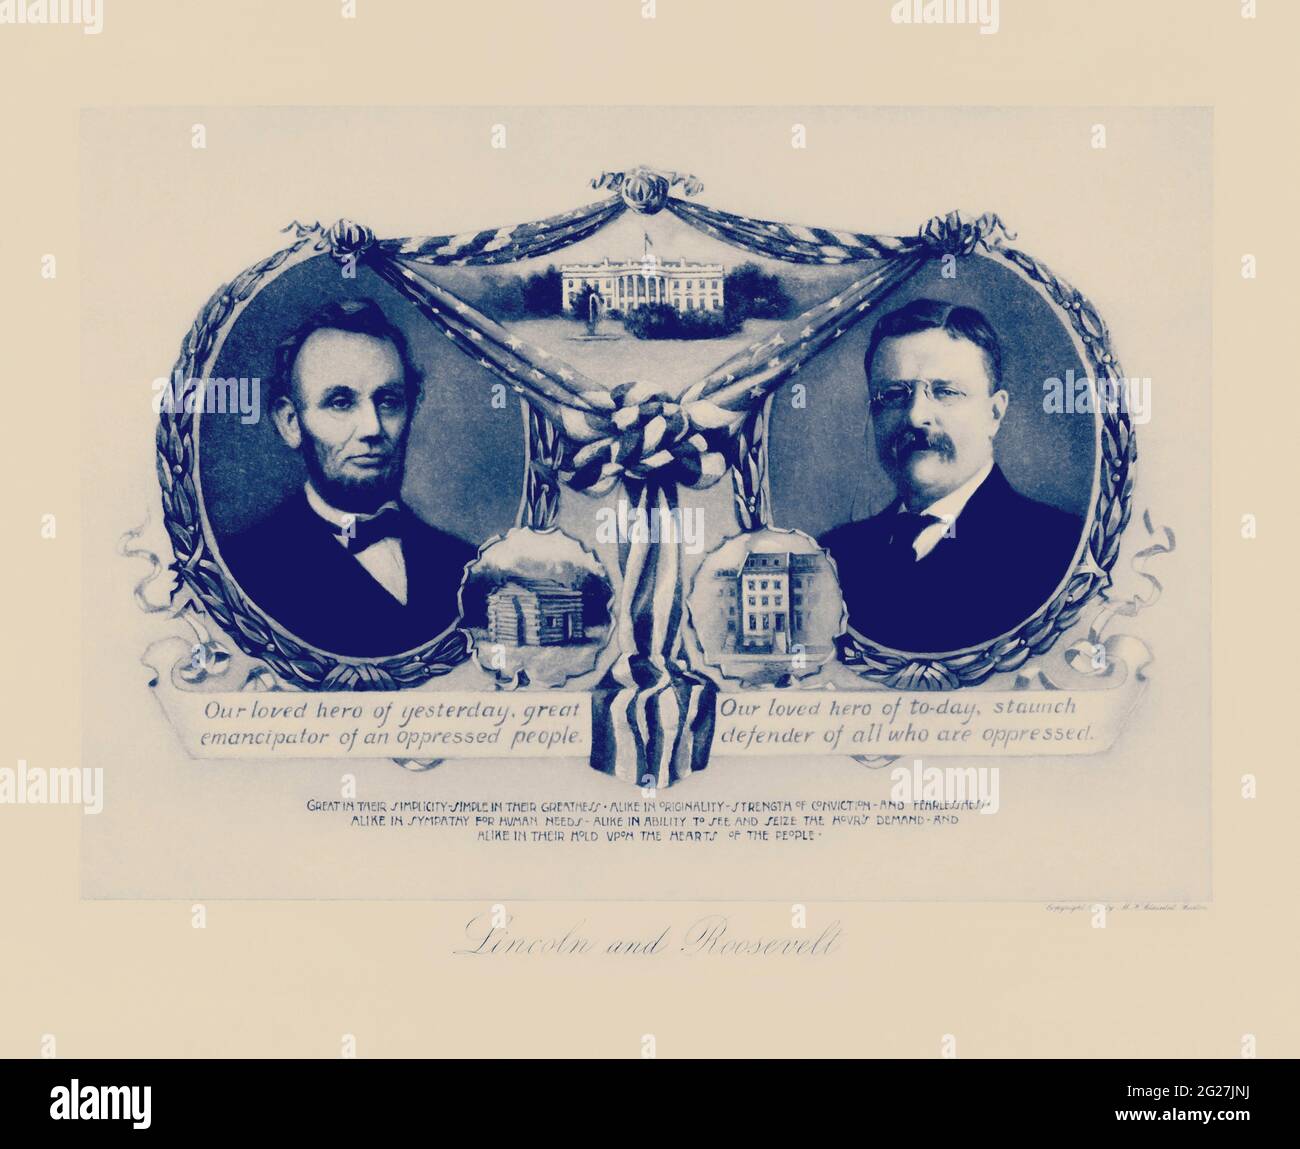 Portraits des présidents américains Abraham Lincoln et Theodore Roosevelt avec leurs lieux de naissance respectifs. Banque D'Images